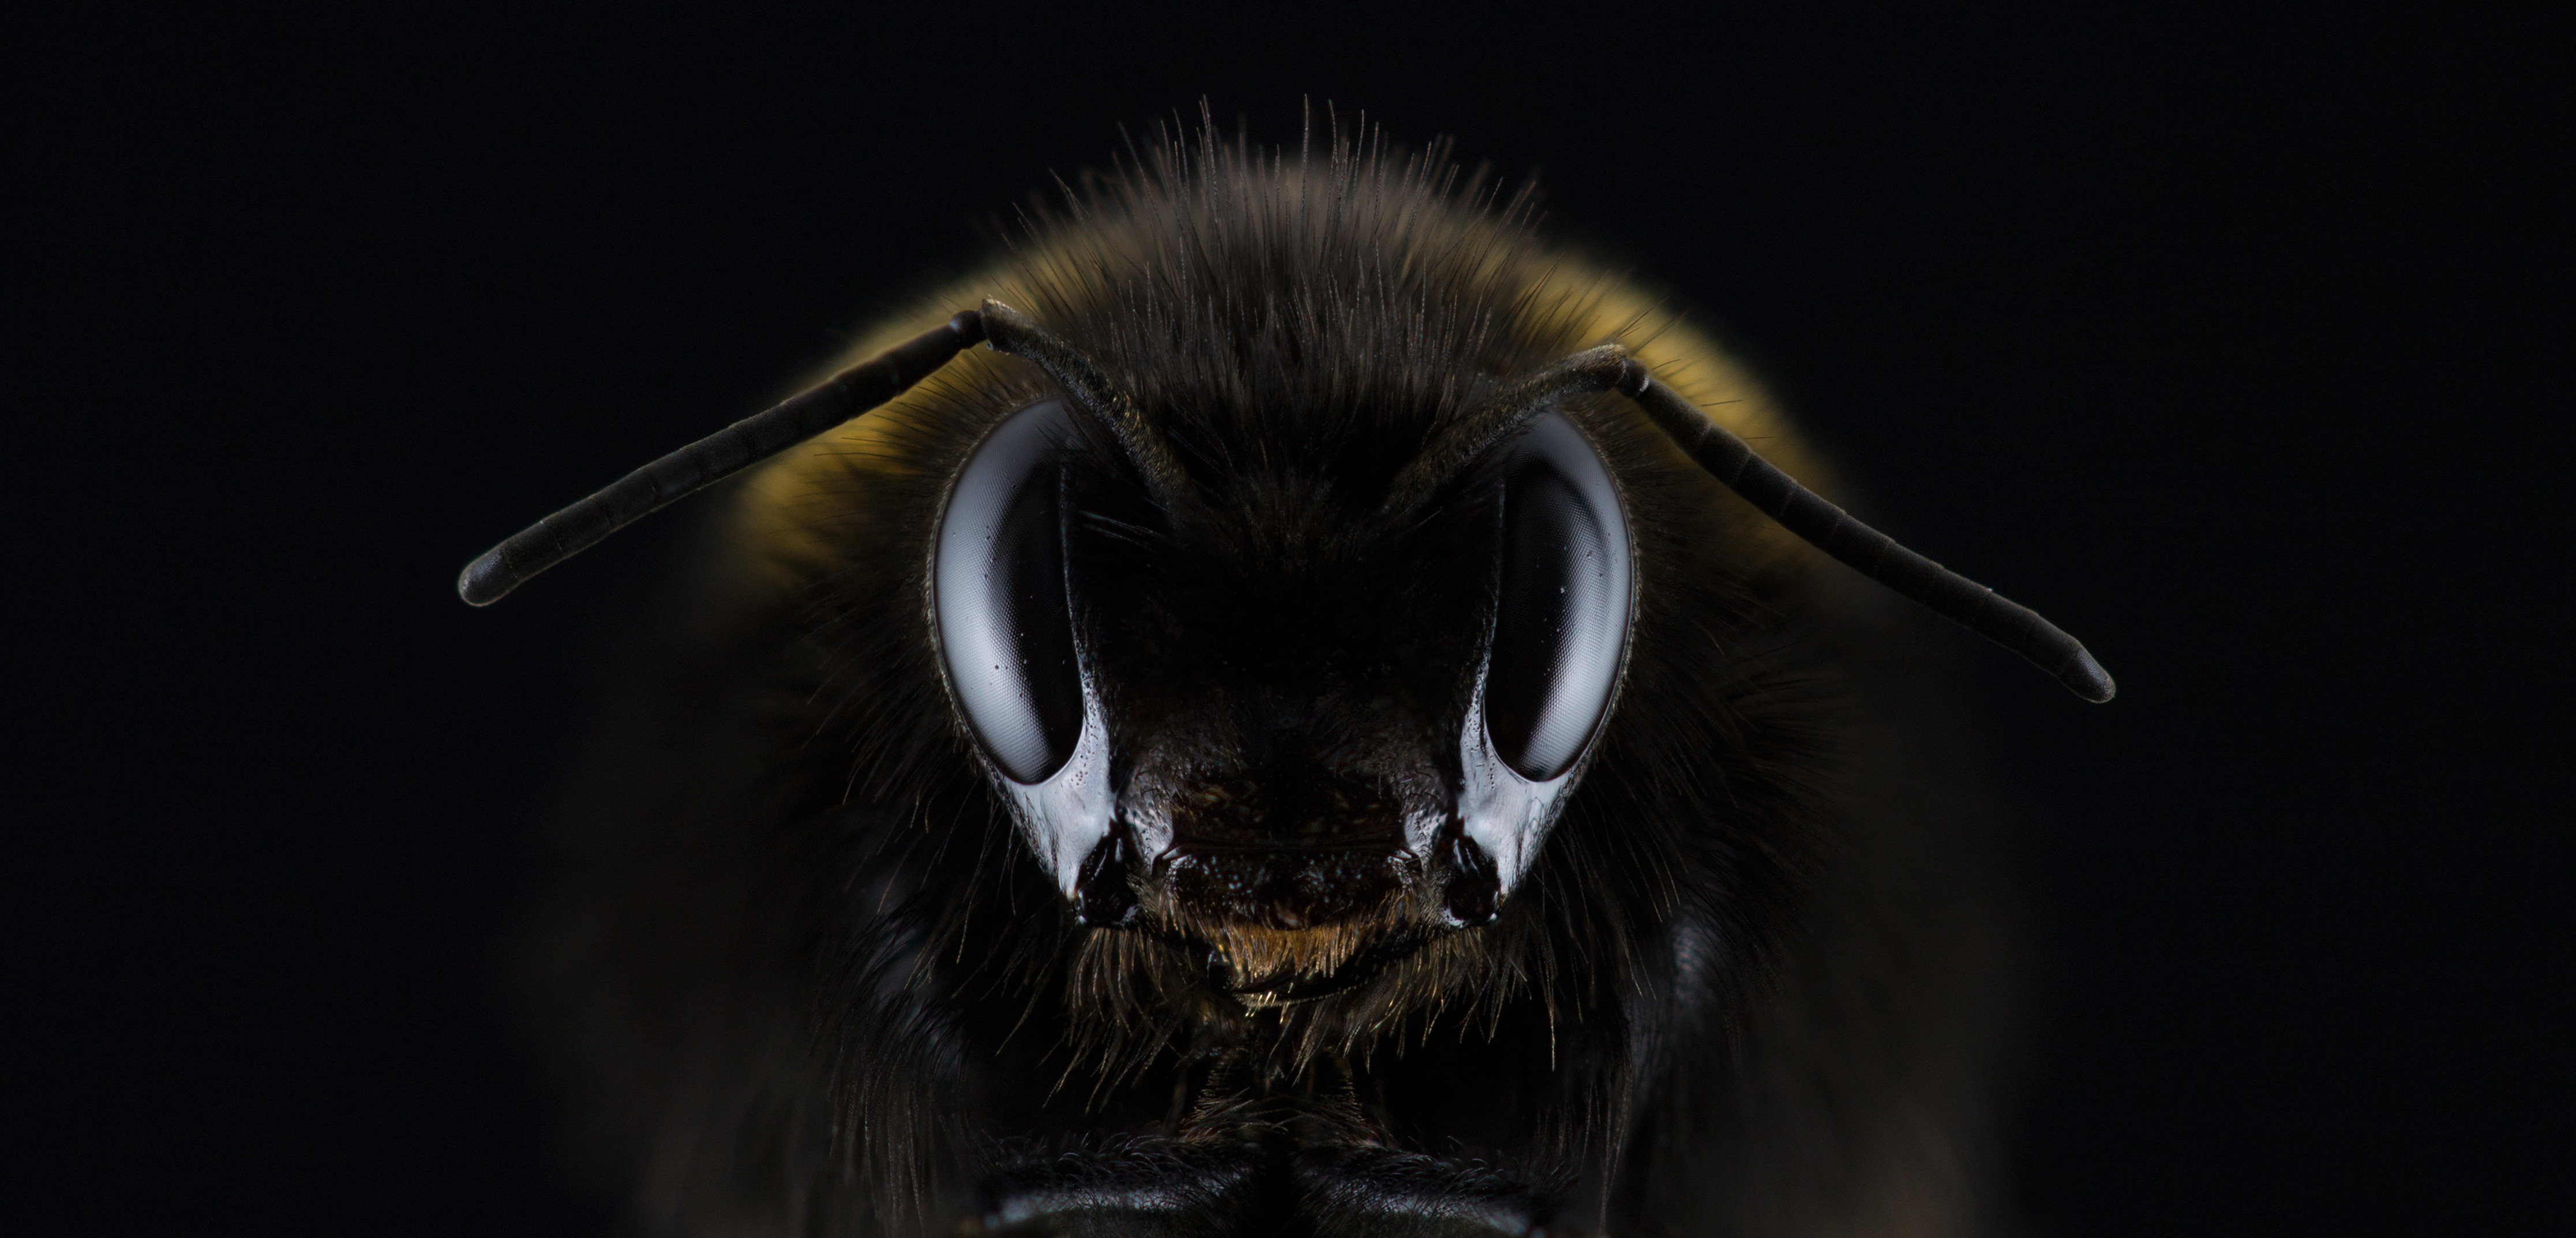 Голова пчелы с большими глазами на черном фоне